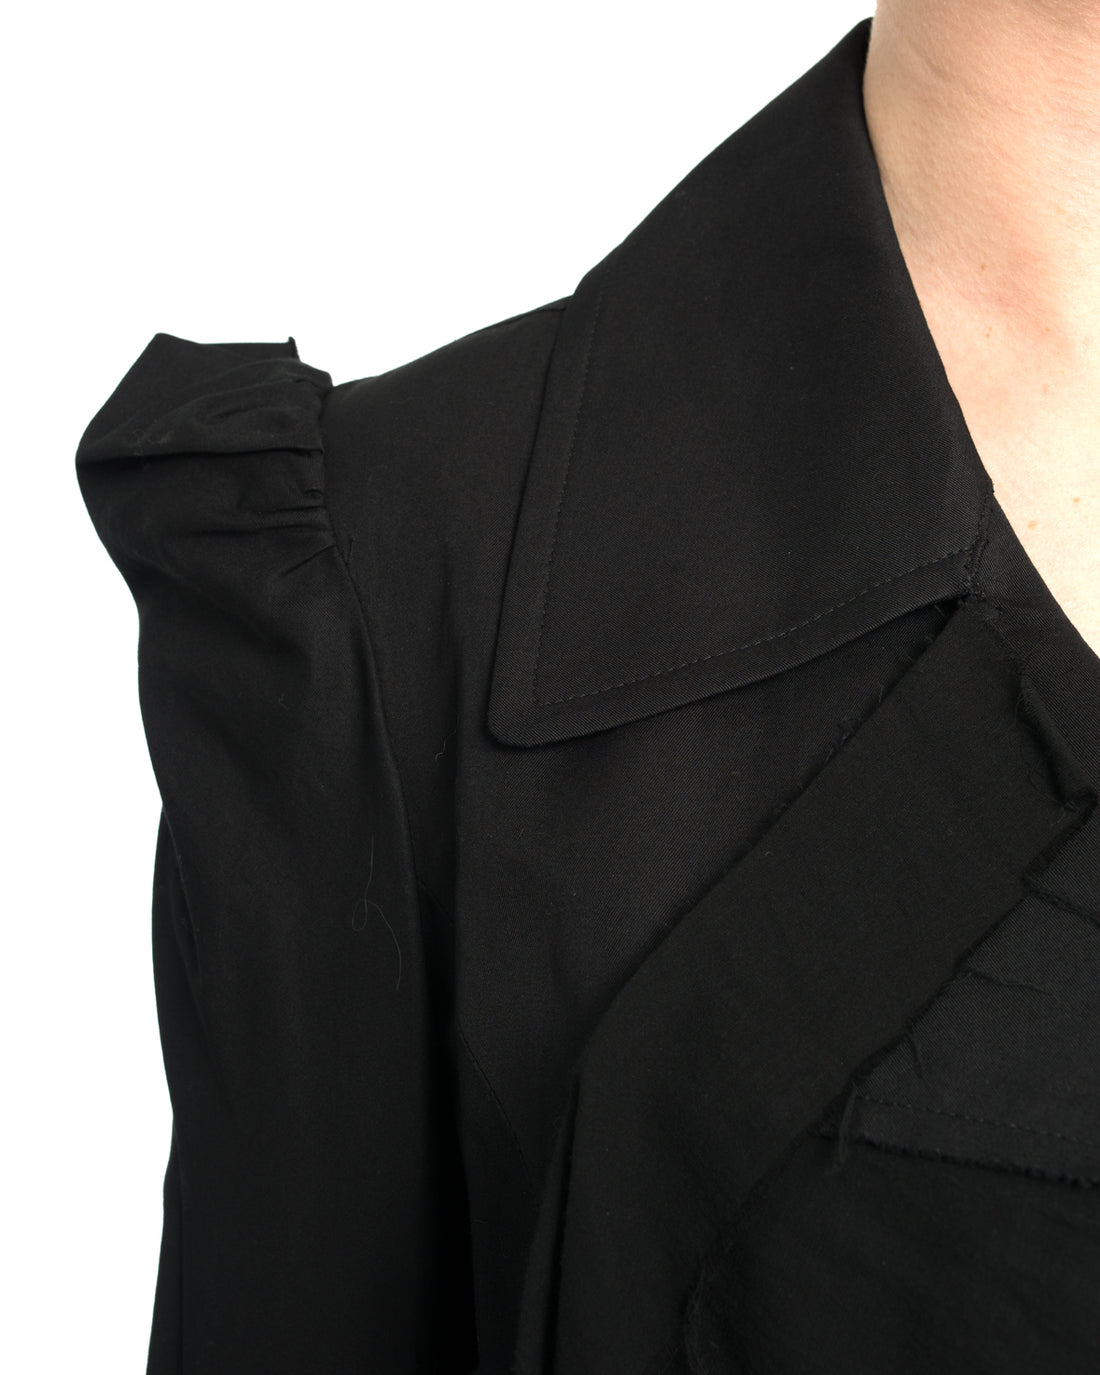 Yohji Yamamoto Black Cotton Belted Jacket - S